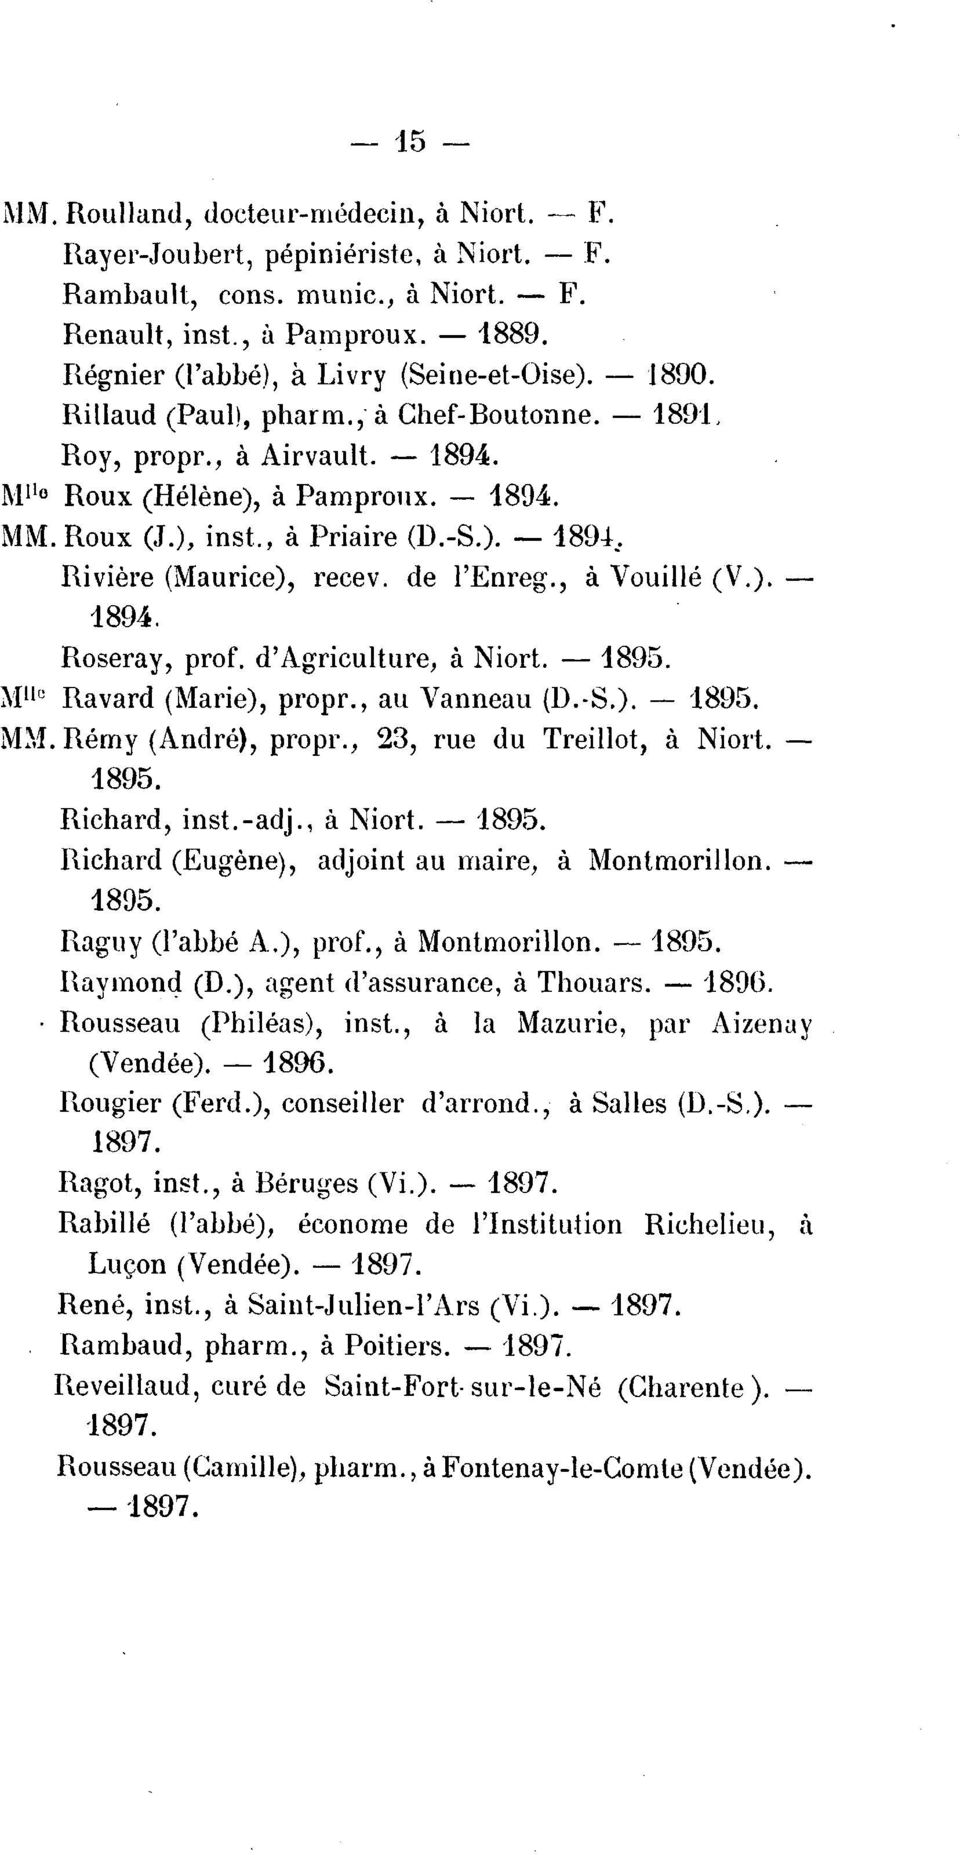 -S.). - 189±, Riviere (Maurice), recev. de l'enreg., a Vouille (V.).- 1894. Roseray, pro f. d' Agriculture, a Niort. - 1895.. Mllo Ravard (Marie), propr., au Vanneau (D. S.). - 1895. Remy (Andre), propr.